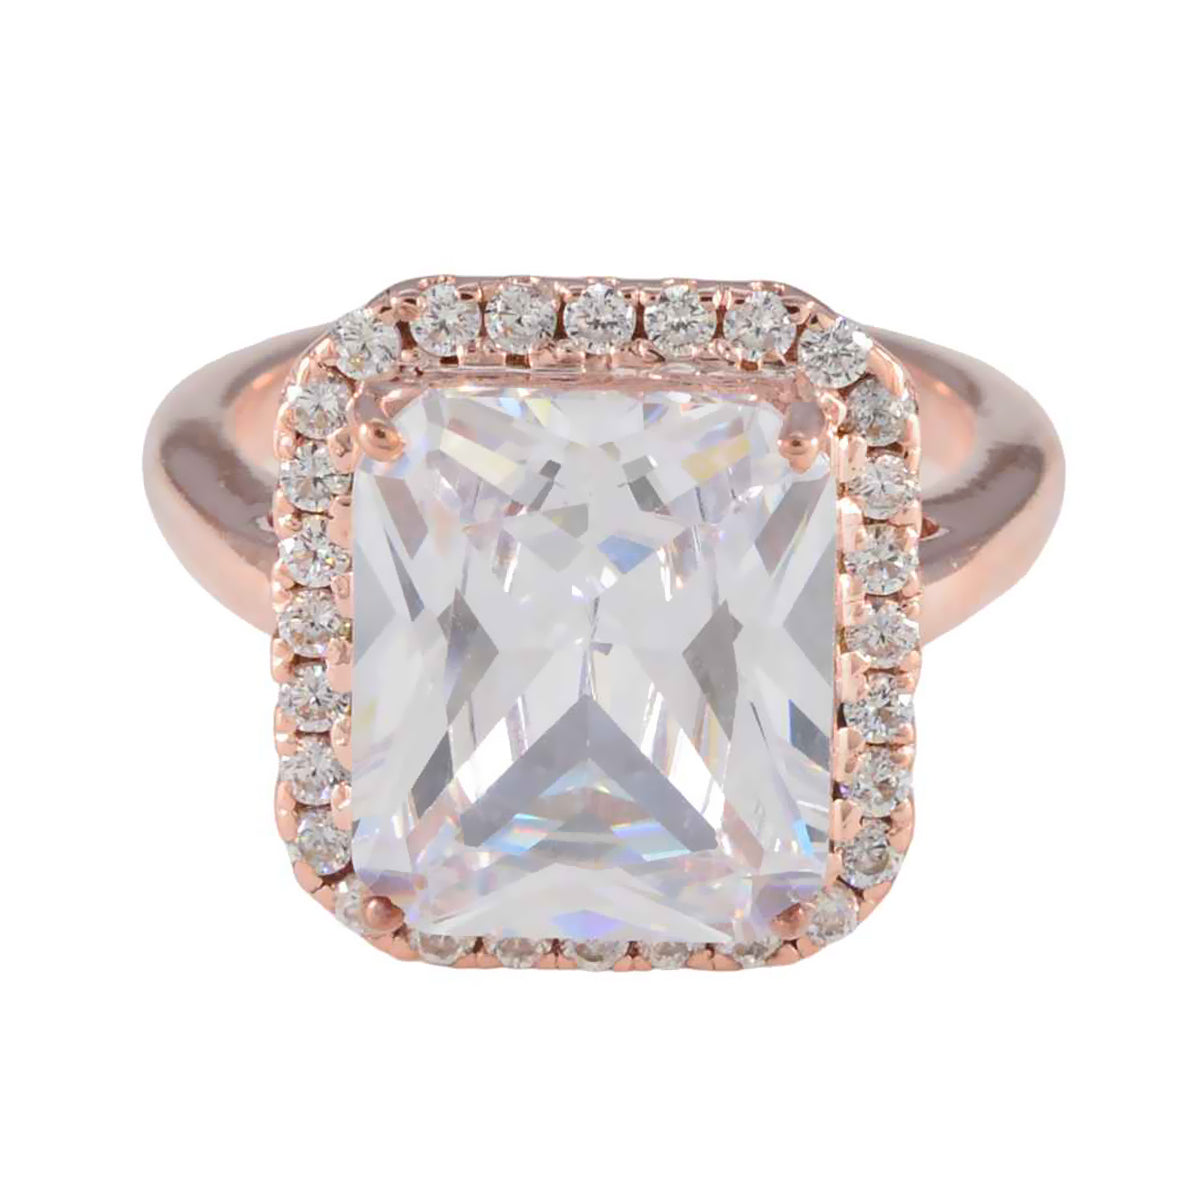 anello riyo in argento antico con placcatura in oro rosa pietra bianca cz a forma ottagonale con montatura a punta per gioielli personalizzati anello del ringraziamento